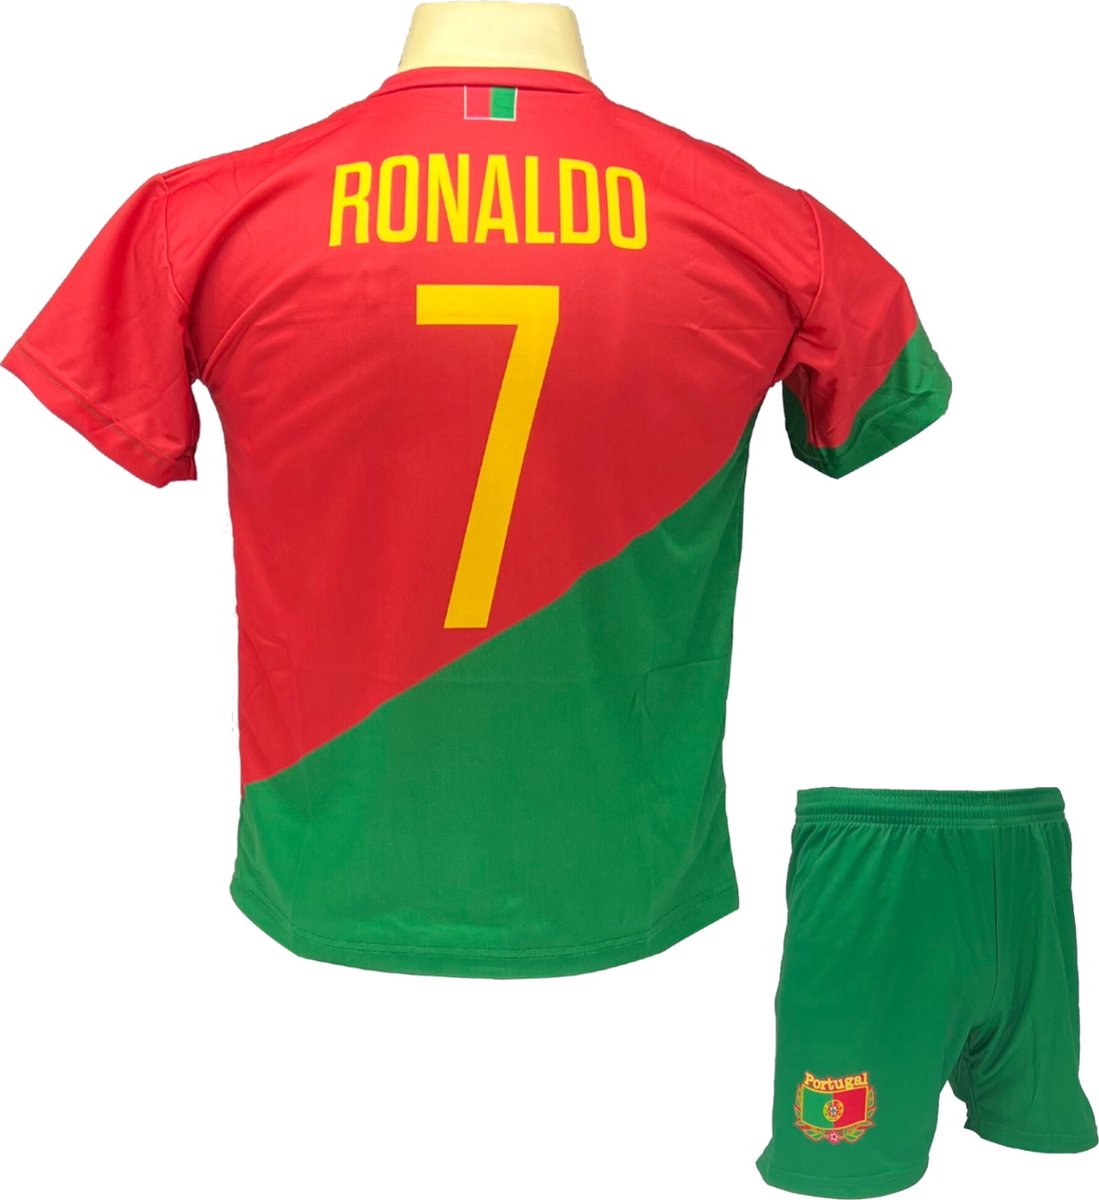 Cristiano Ronaldo CR7 Portugal Tenue - Voetbal Shirt + broekje set - EK/WK voetbaltenue - Maat 152 - Rood Groen